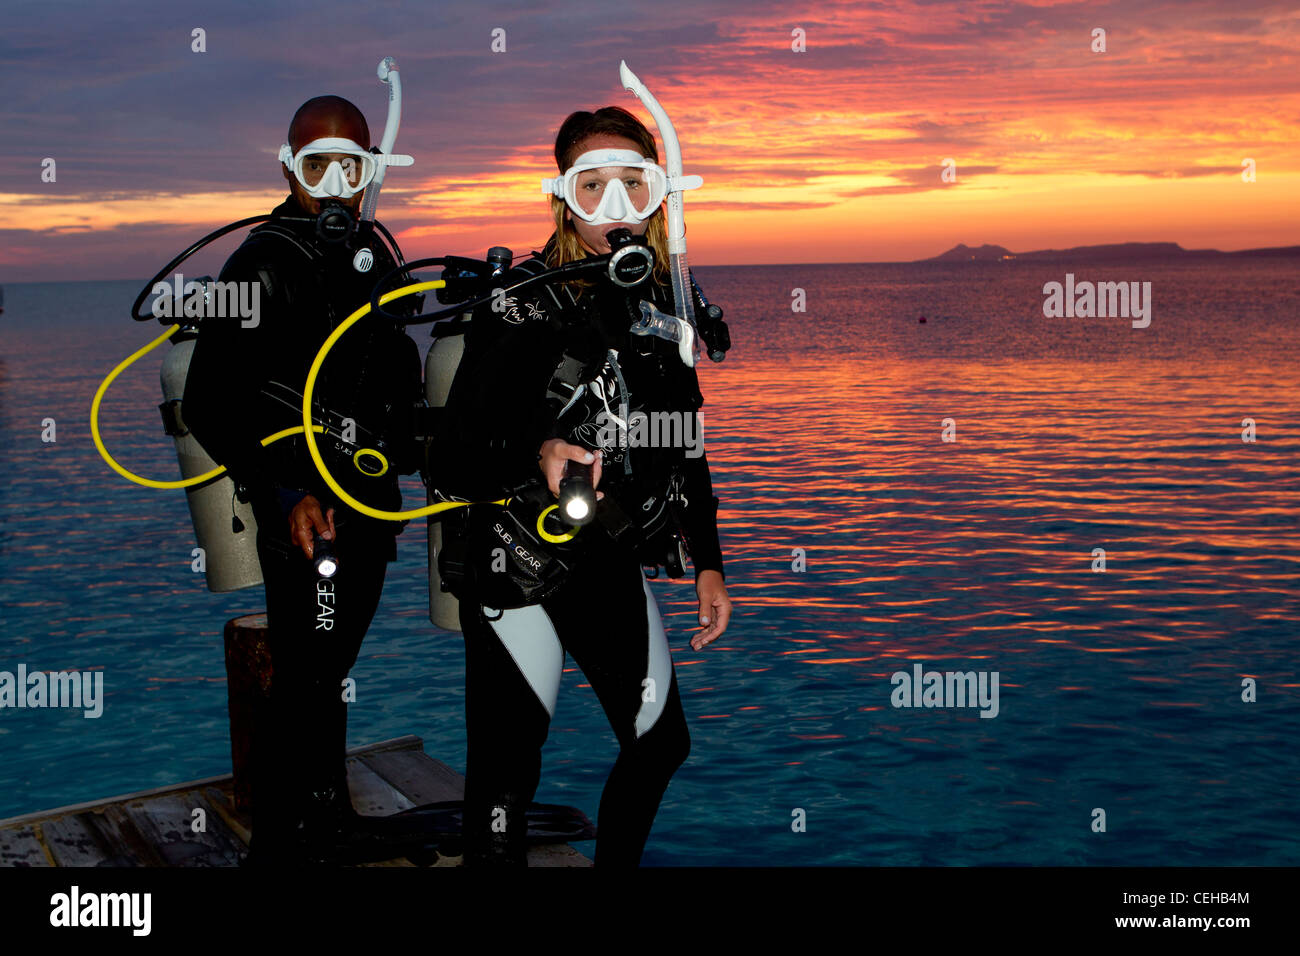 Les plongeurs se retrouvent dans l'eau au crépuscule Banque D'Images